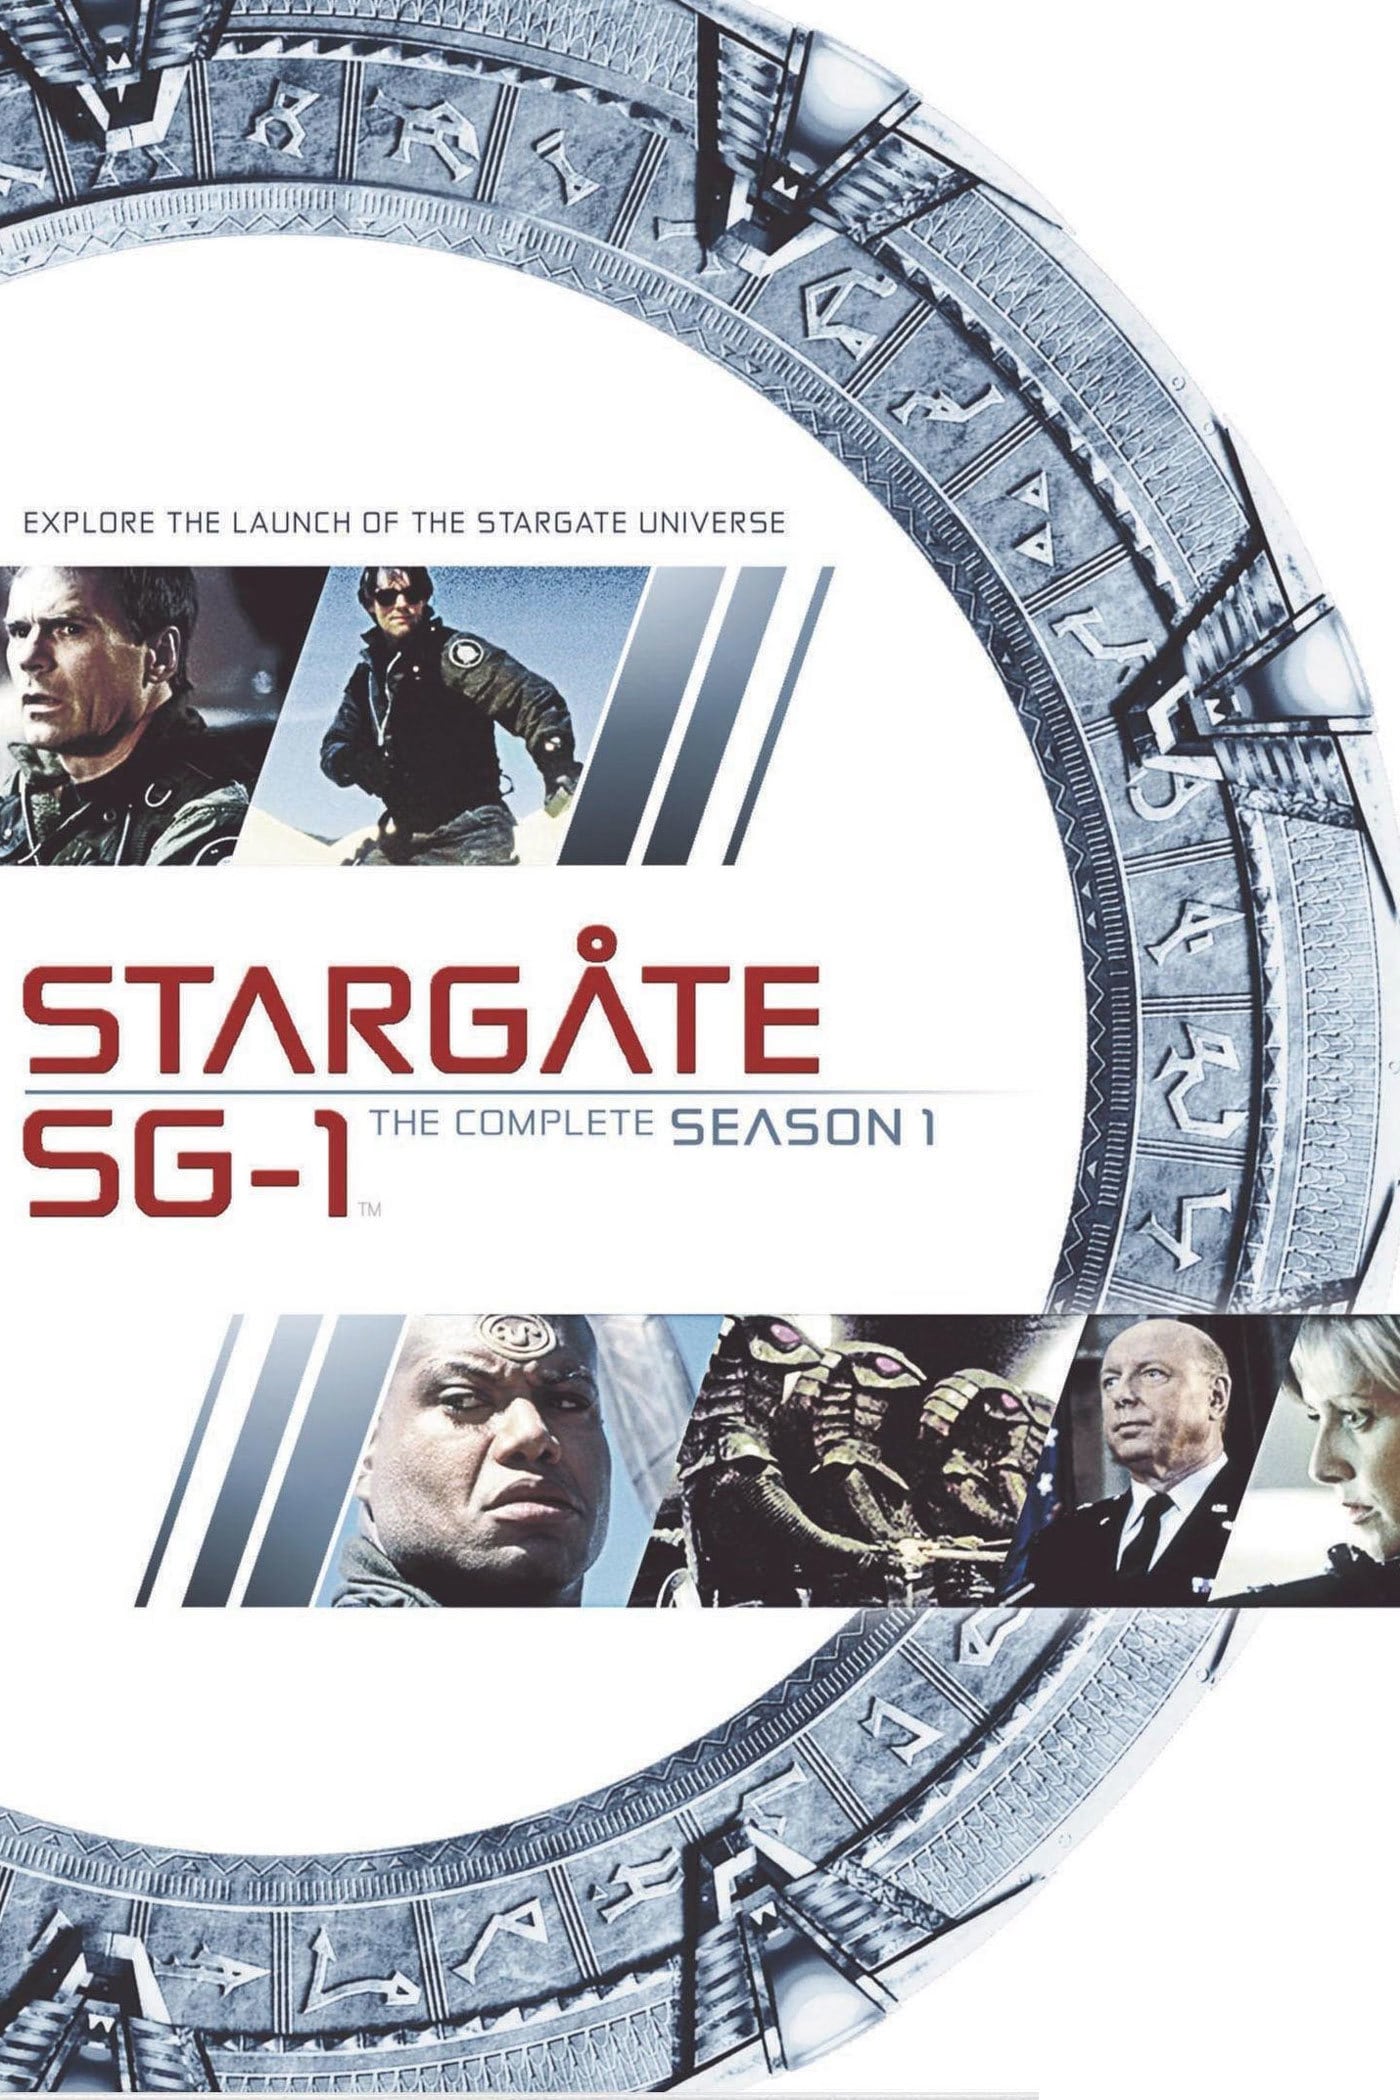 Stargate sg 1 saison 1 streaming vf